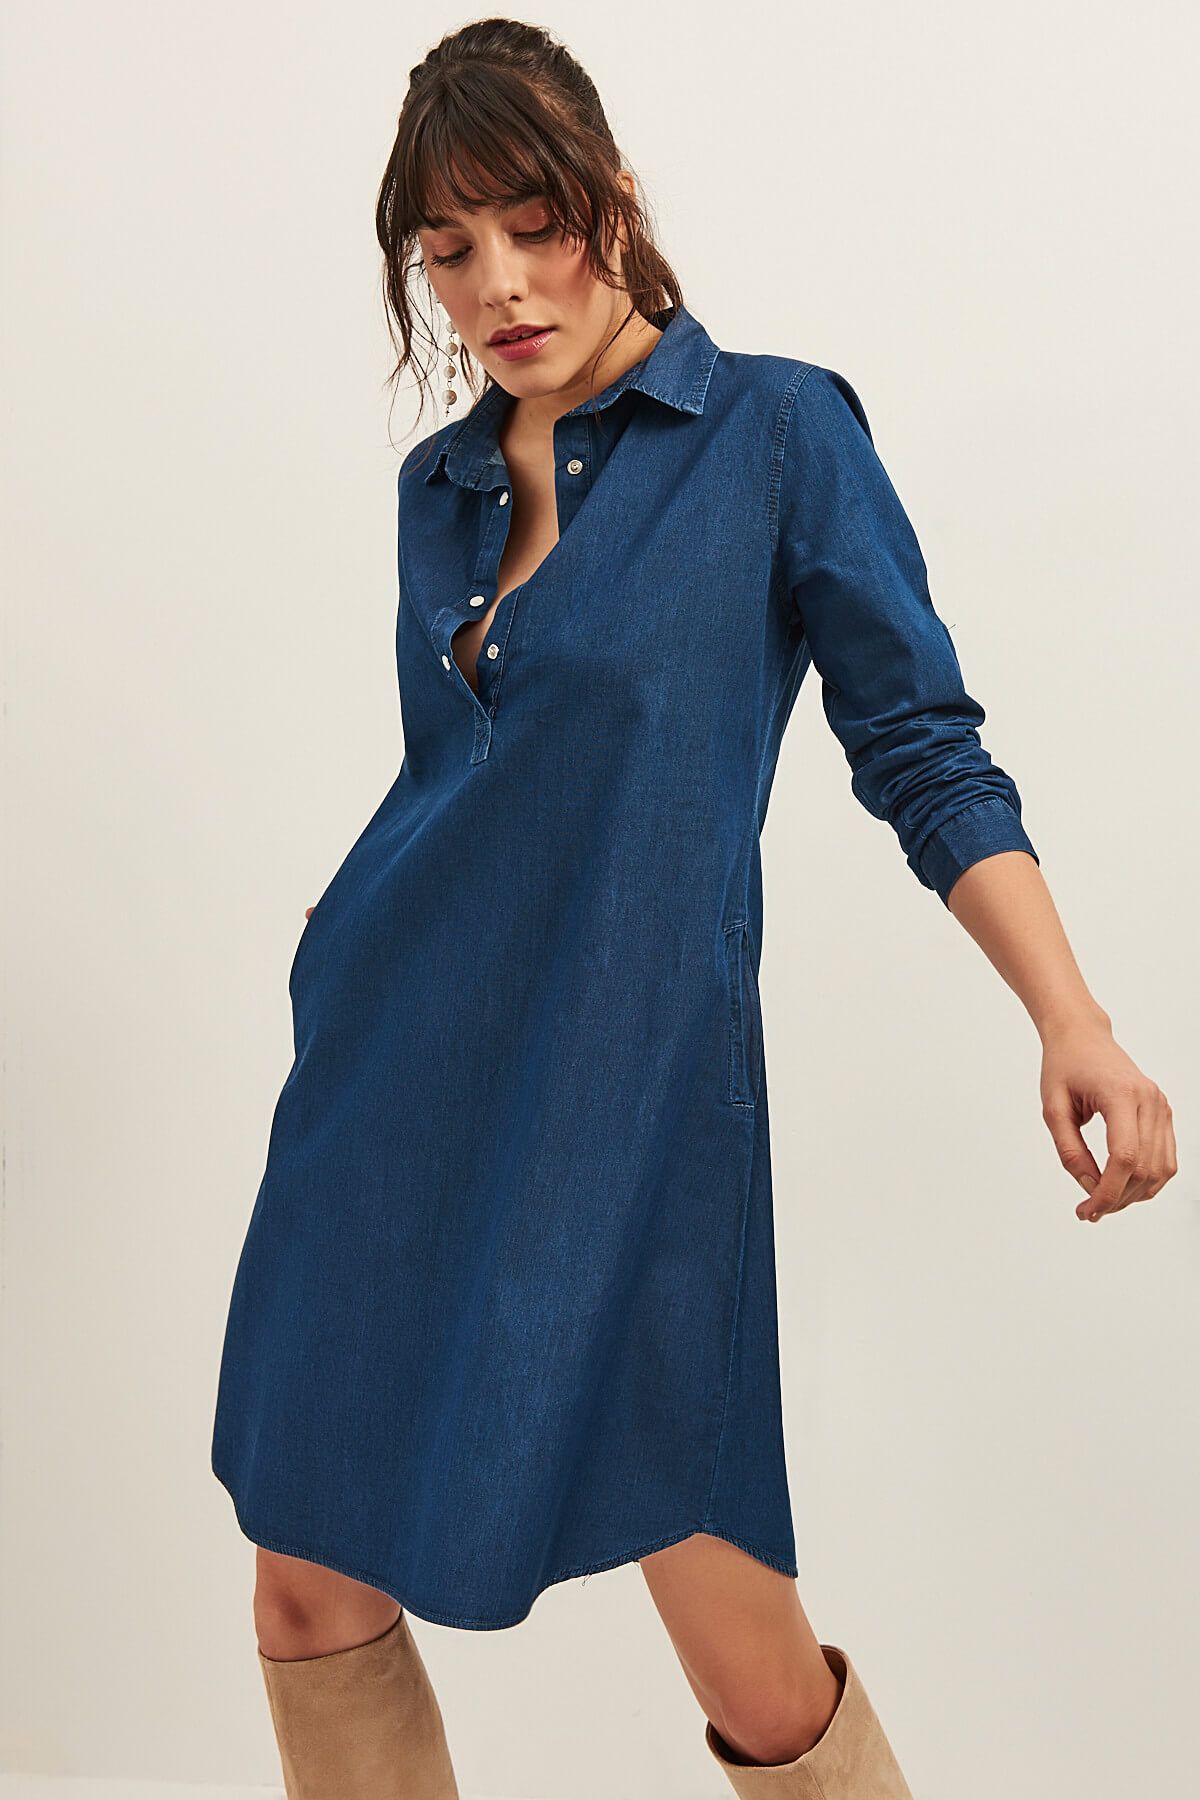 Olalook Kadın Koyu Mavi Cepli Gömlek Yaka Denim Elbise OLA-EL13528